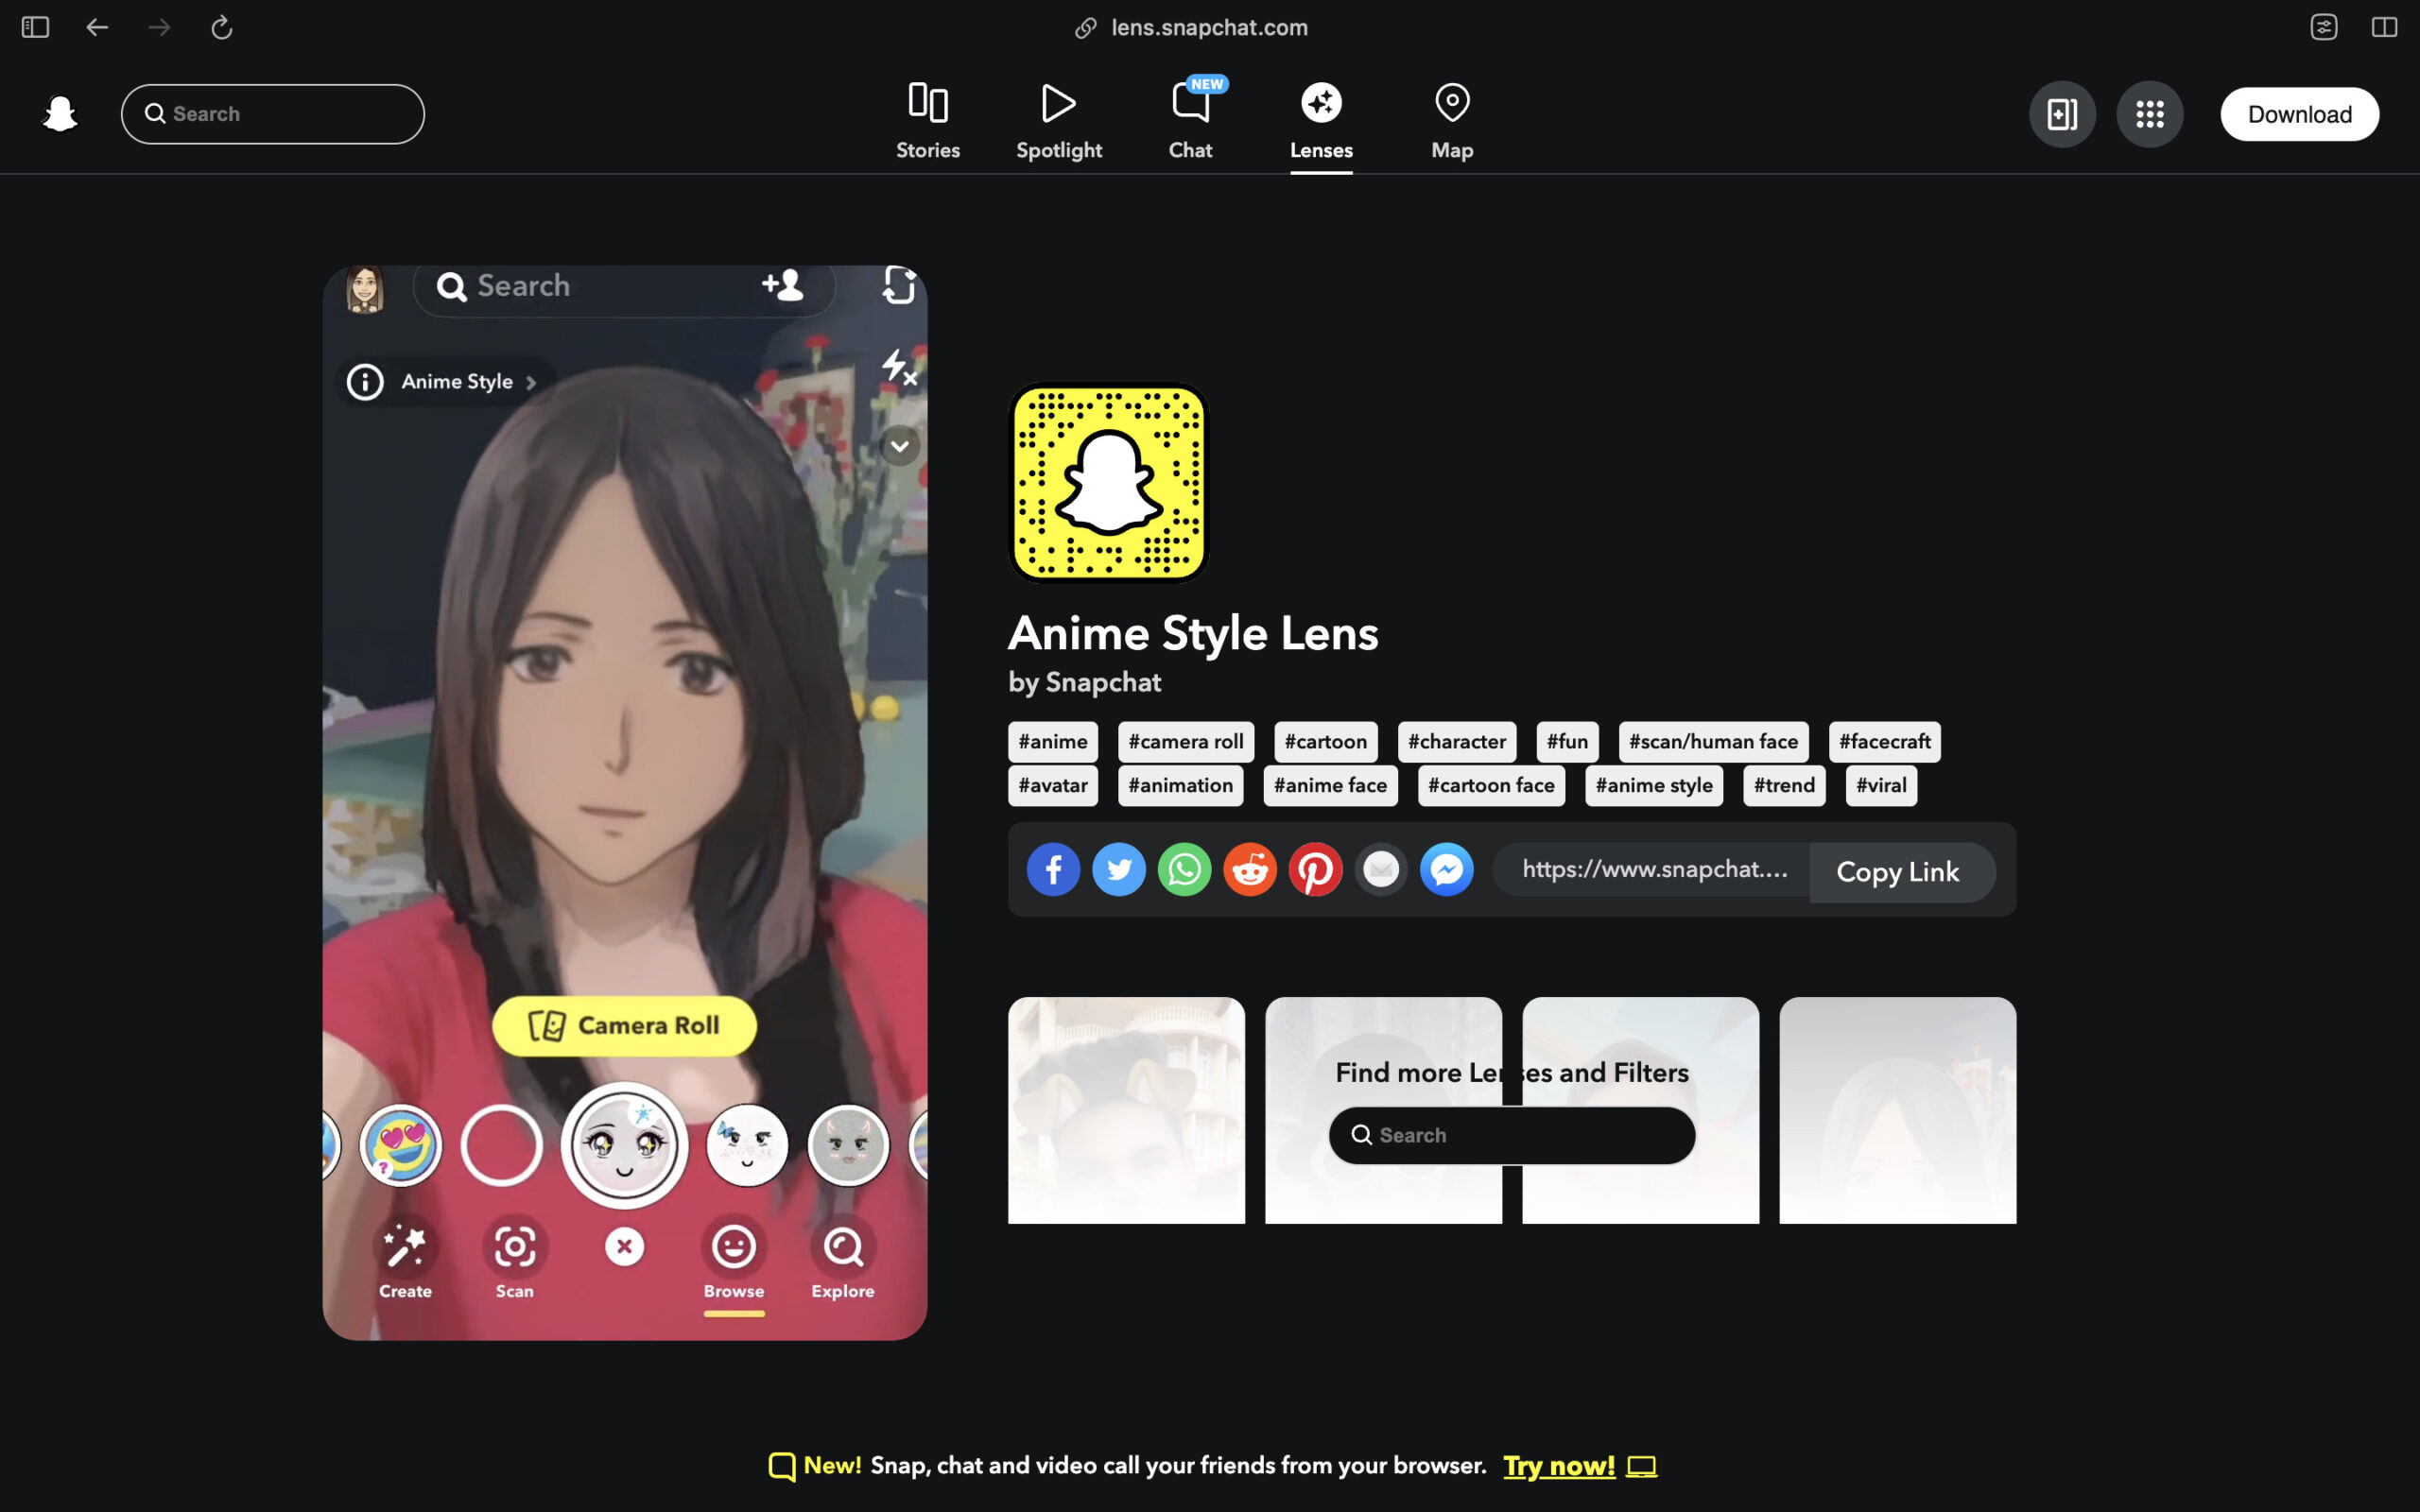 Send a Snap with the cartoon face lens Anime Style